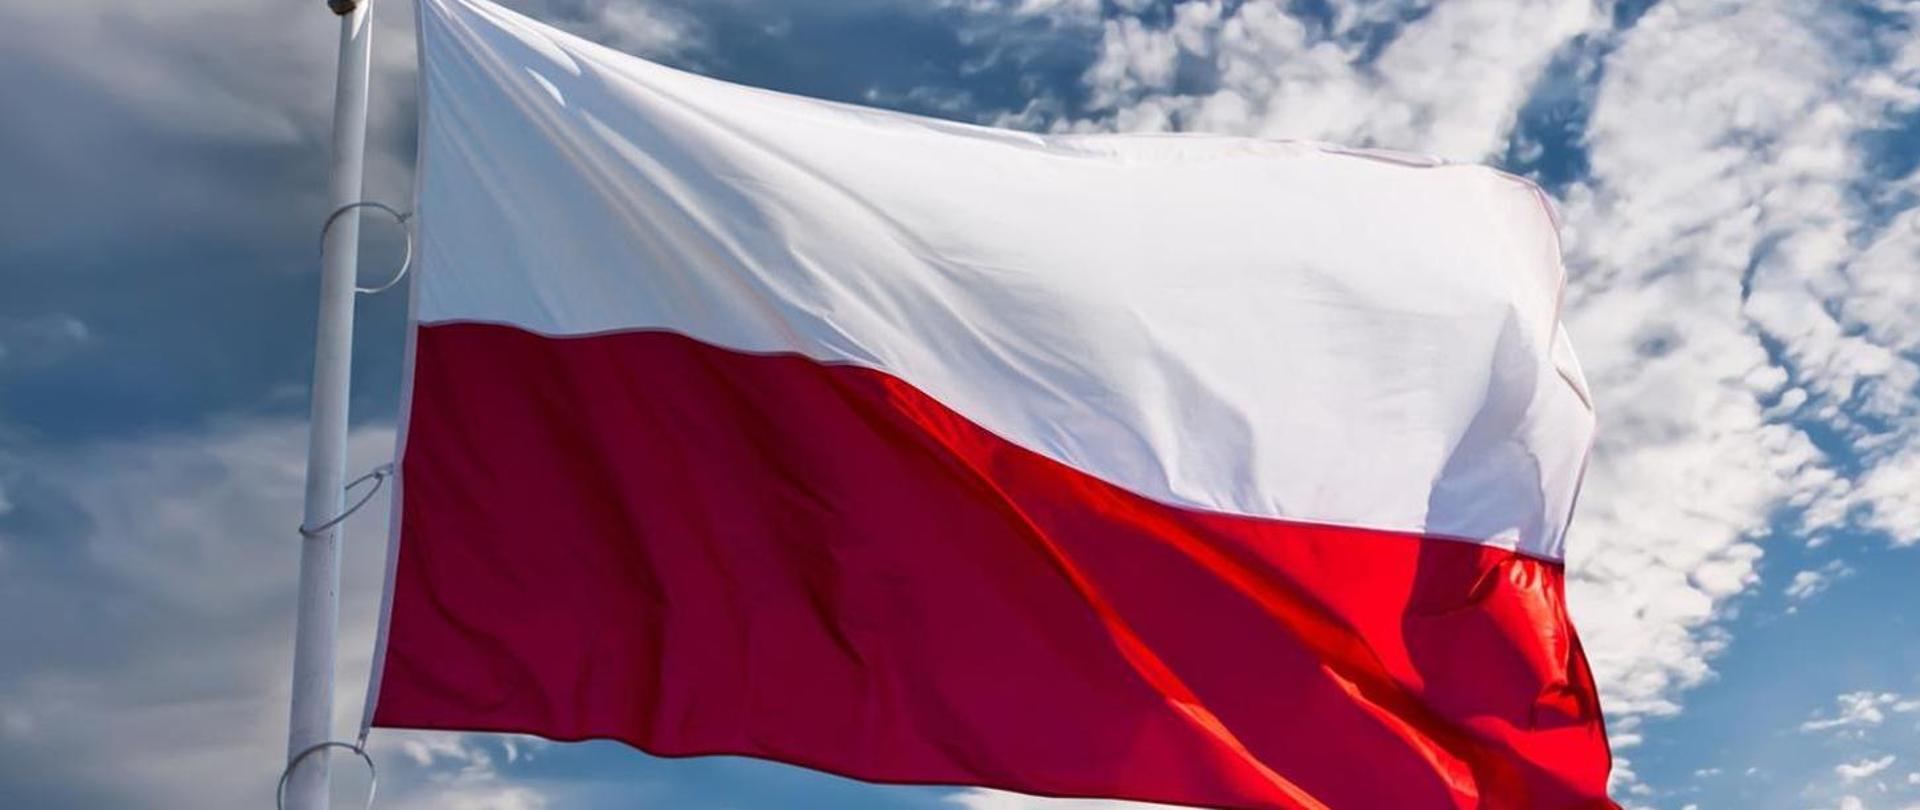 Zdjęcie przedstawia flagę Państwową Polski